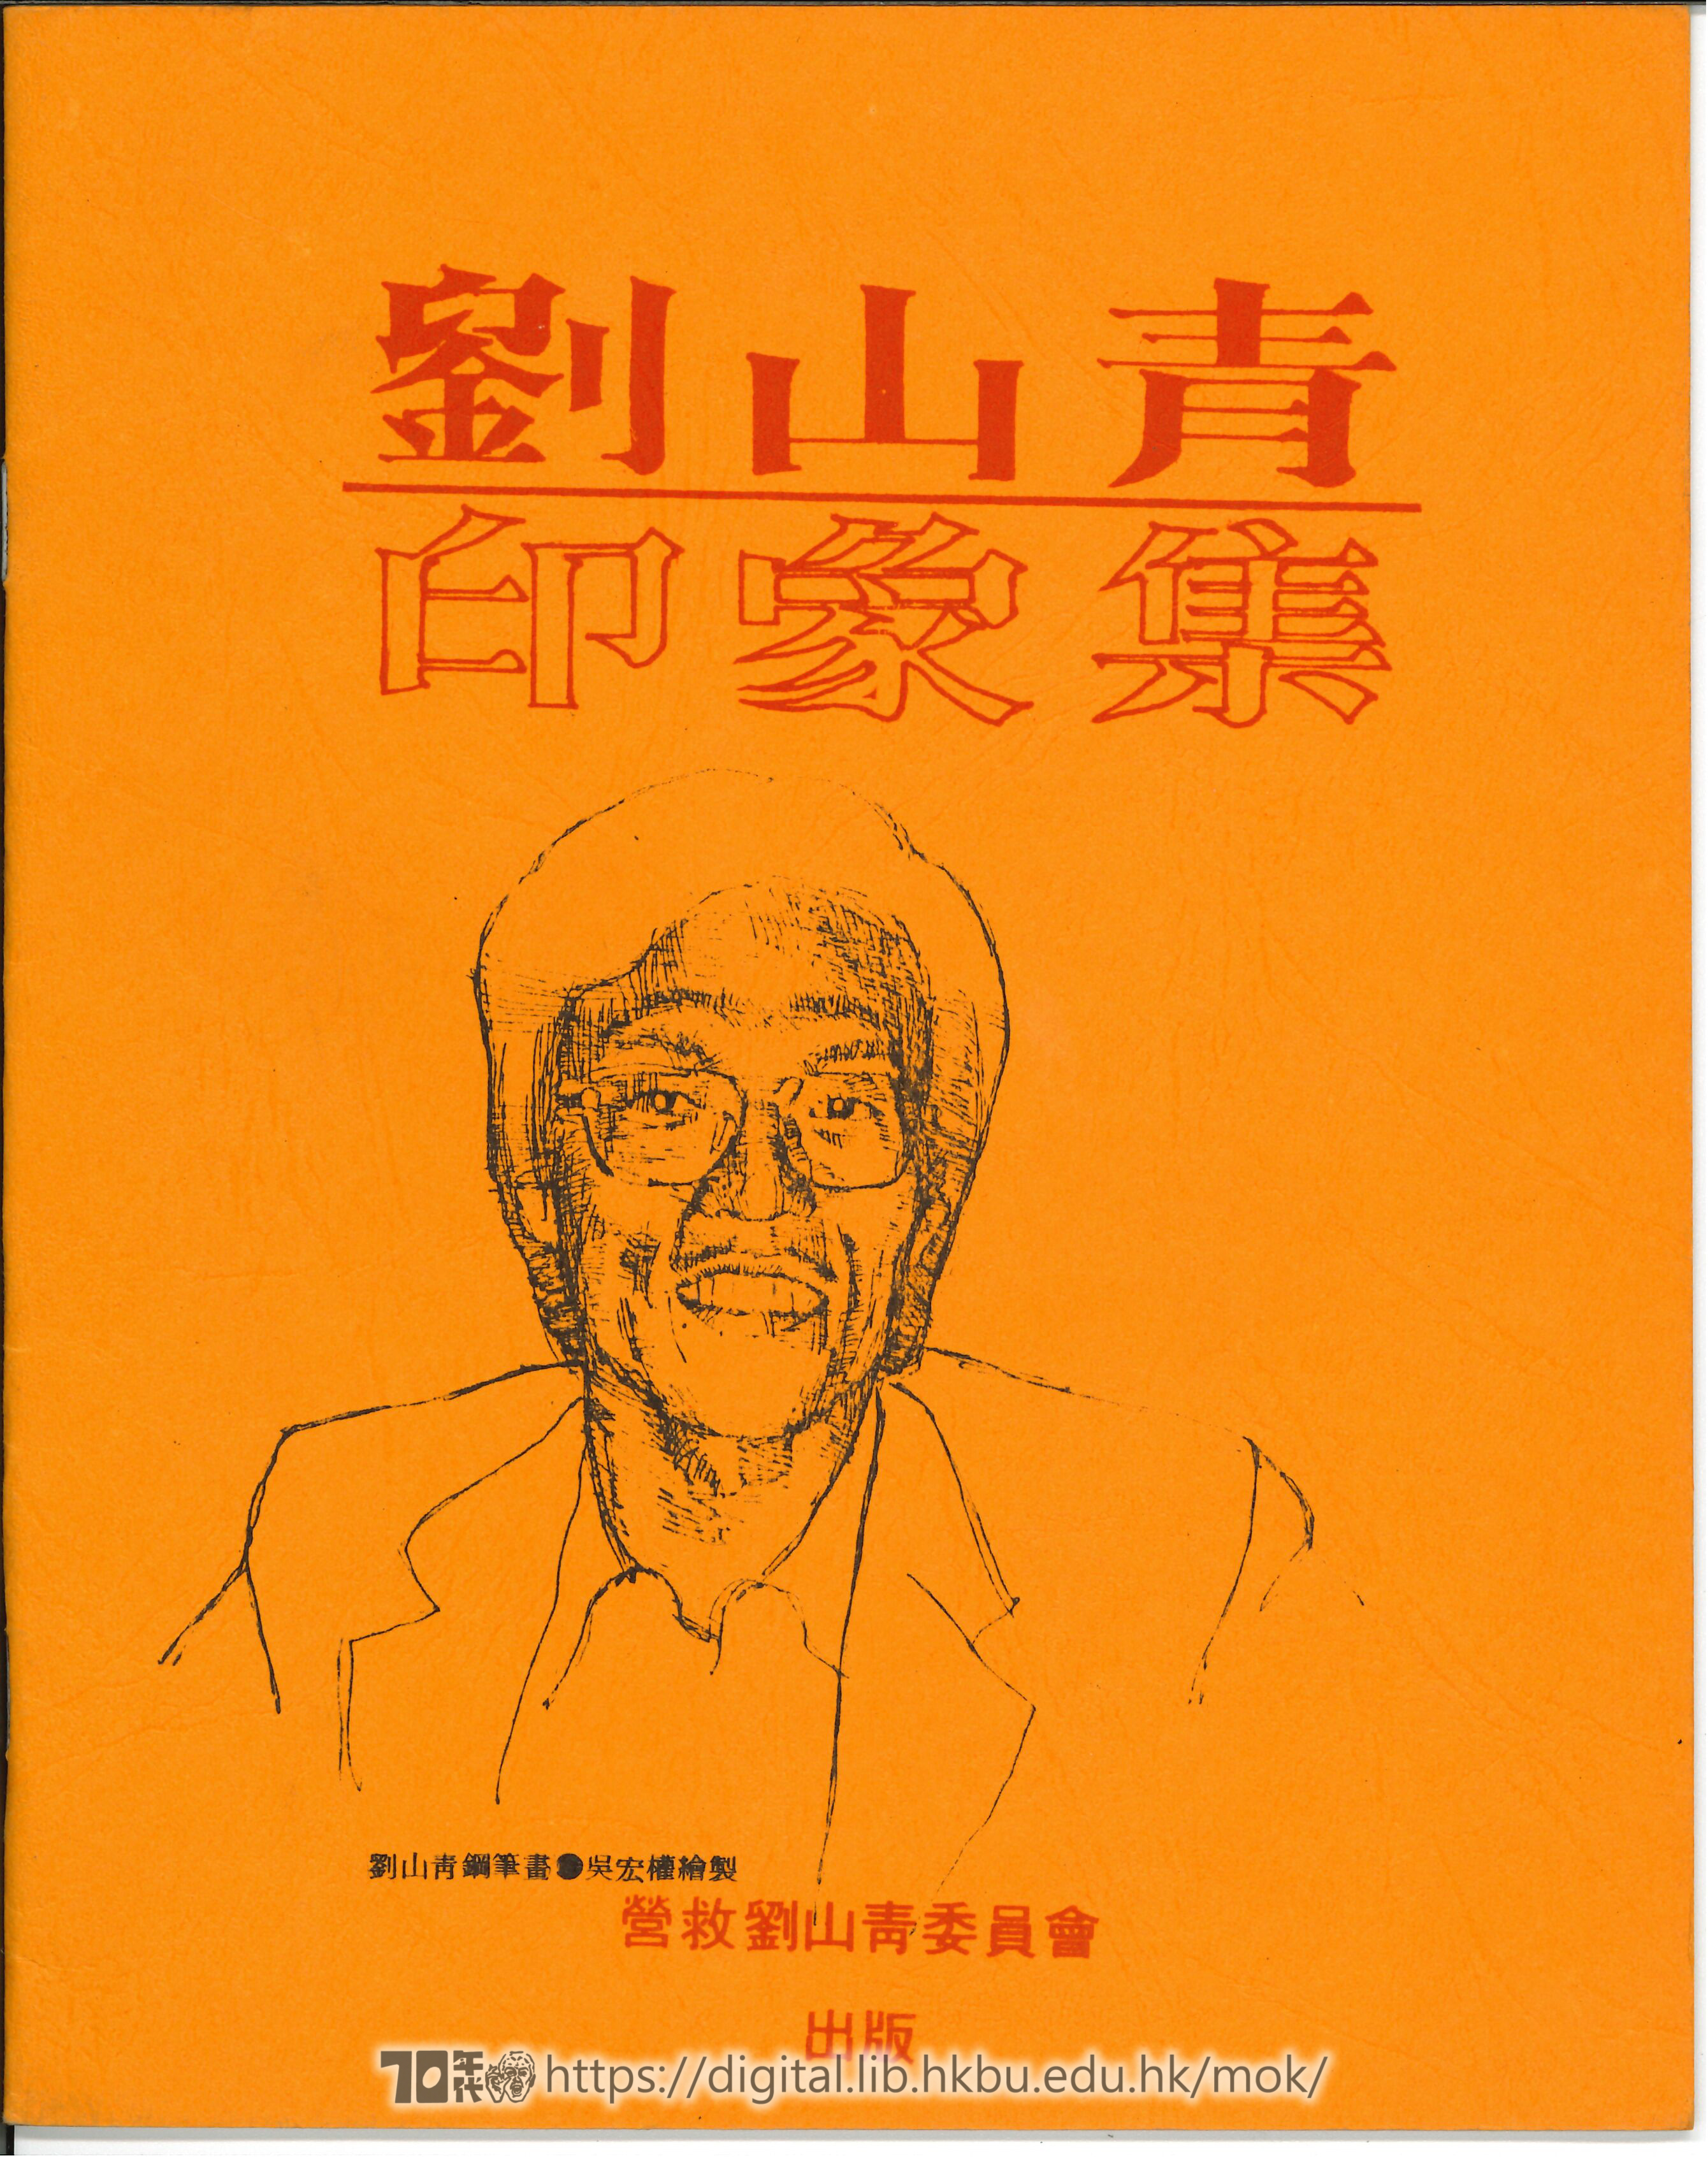   Impressions of Lau Shan-ching 營救劉山青委員會 